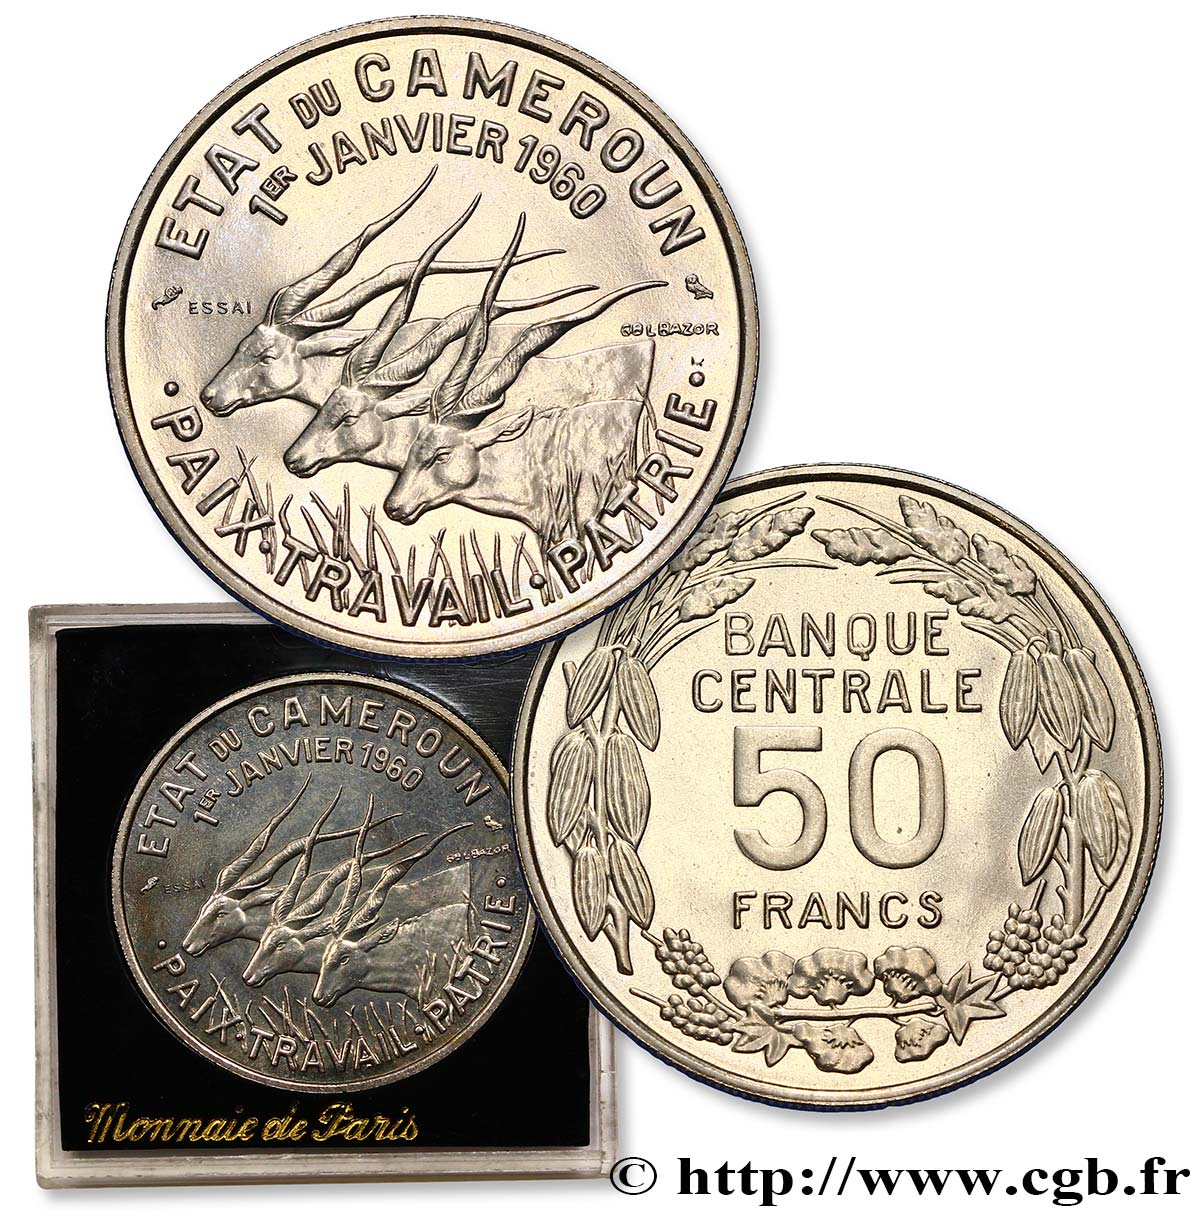 CAMEROUN Essai de 50 Francs Etat du Cameroun, commémoration de l’indépendance, antilopes 1960 Paris SPL 